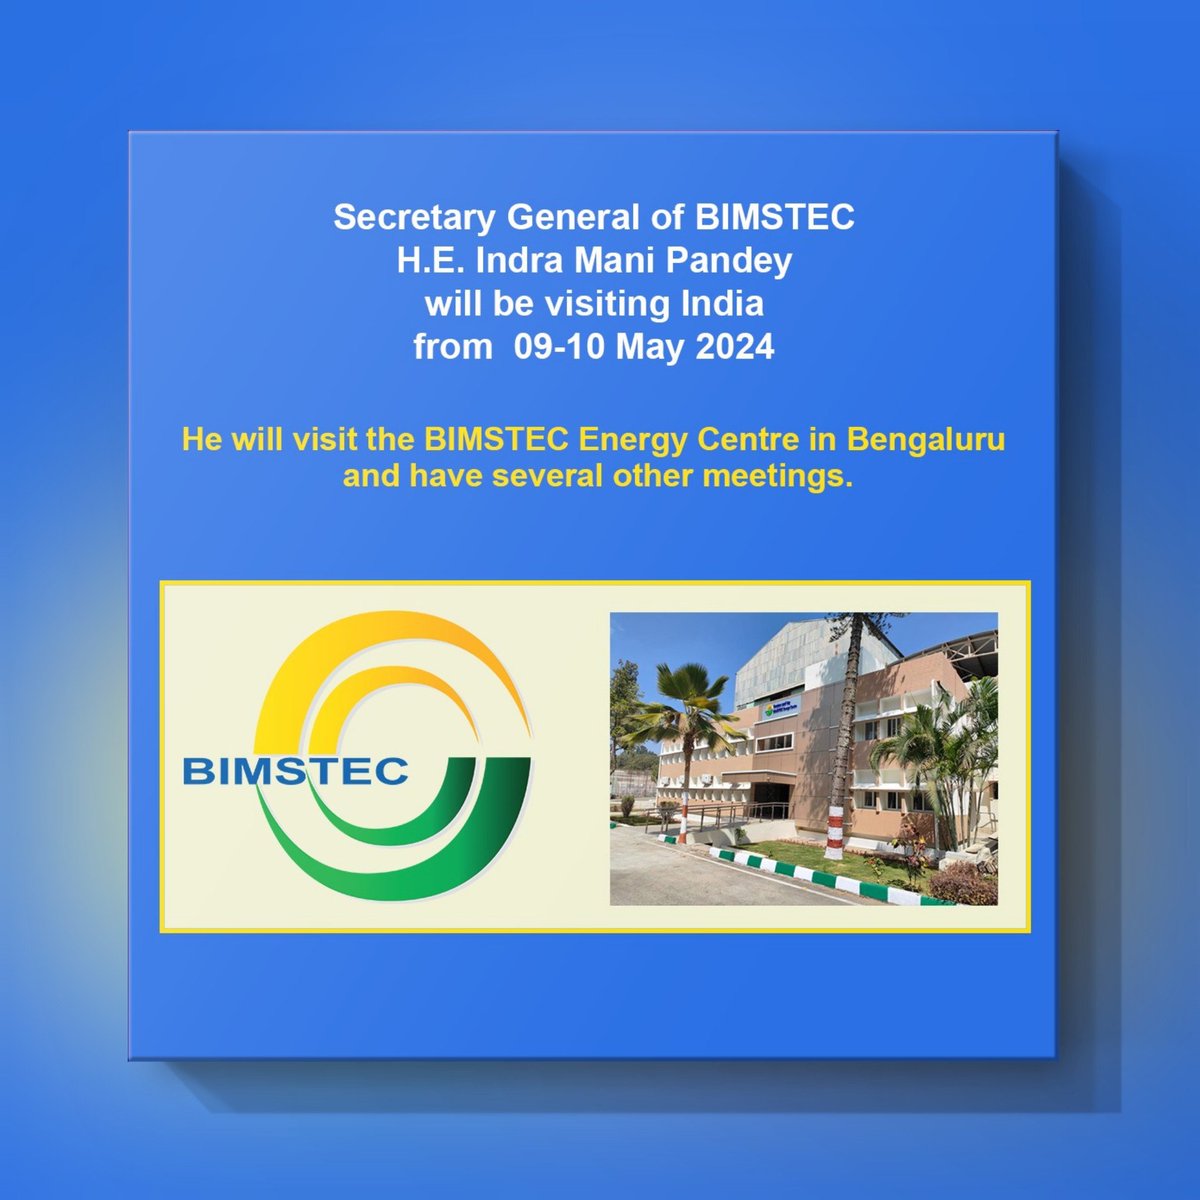 बंगाल की खाड़ी बहु-क्षेत्रीय तकनीकी और आर्थिक सहयोग पहल (#BIMSTEC) के महासचिव इंद्र मणि पांडे कल से भारत की दो दिन की यात्रा पर होंगे। 

ढाका में बिम्सटेक सचिवालय ने कहा है कि वह बेंगलुरु में बिम्सटेक ऊर्जा केंद्र का दौरा करेंगे और कई बैठकें करेंगे।